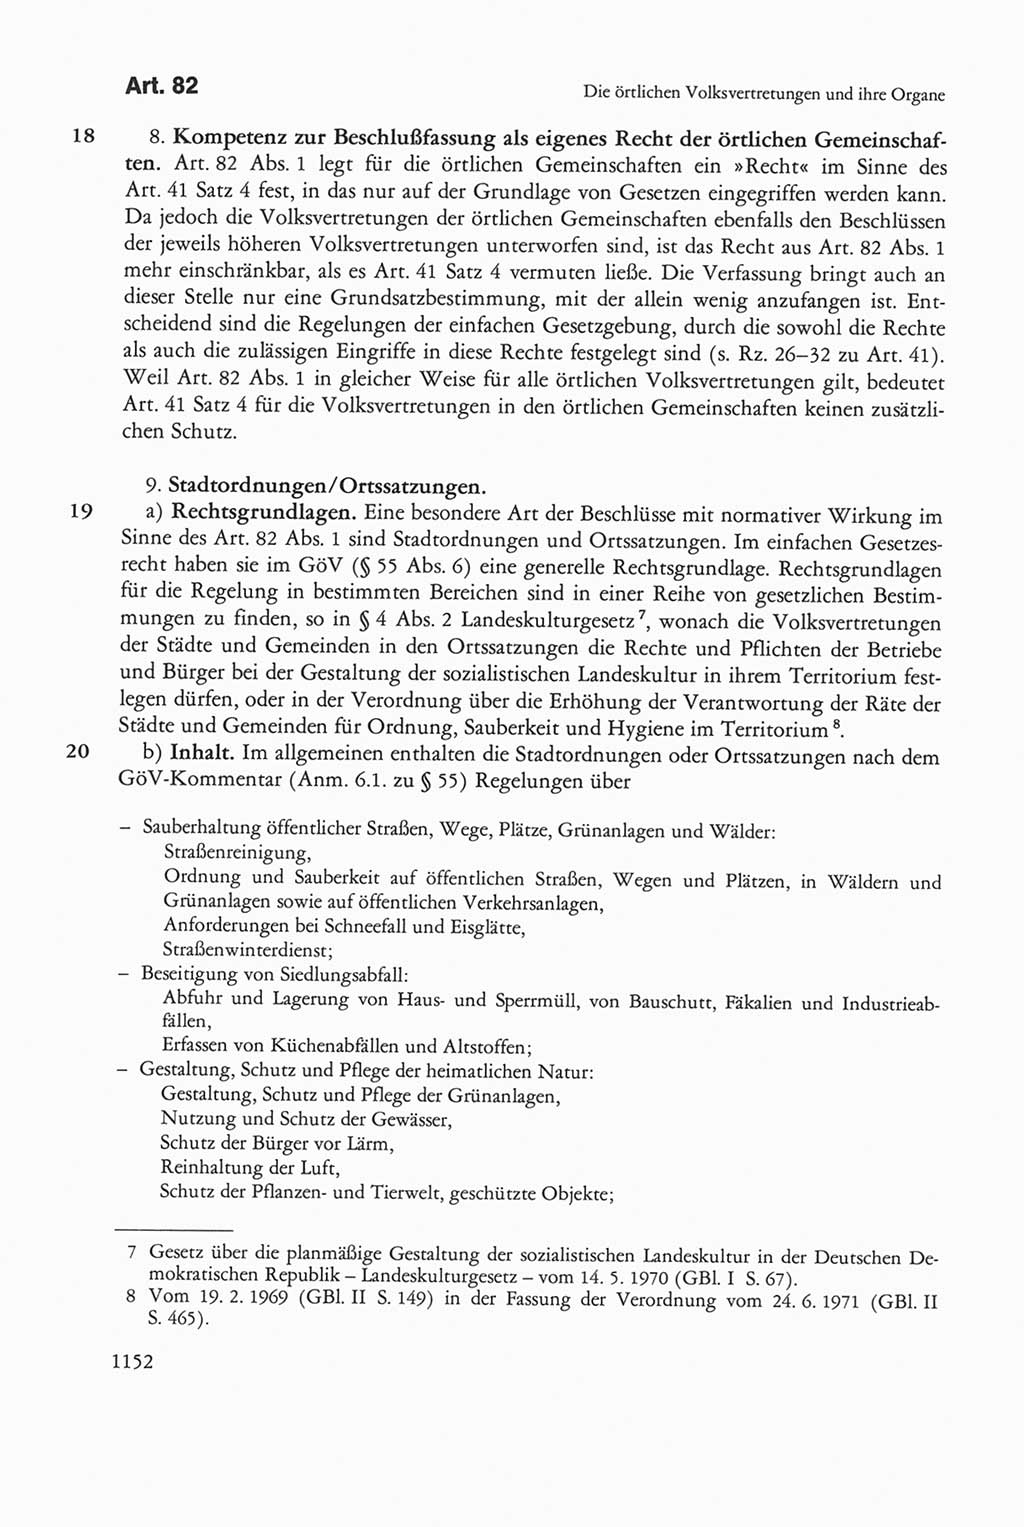 Die sozialistische Verfassung der Deutschen Demokratischen Republik (DDR), Kommentar 1982, Seite 1152 (Soz. Verf. DDR Komm. 1982, S. 1152)